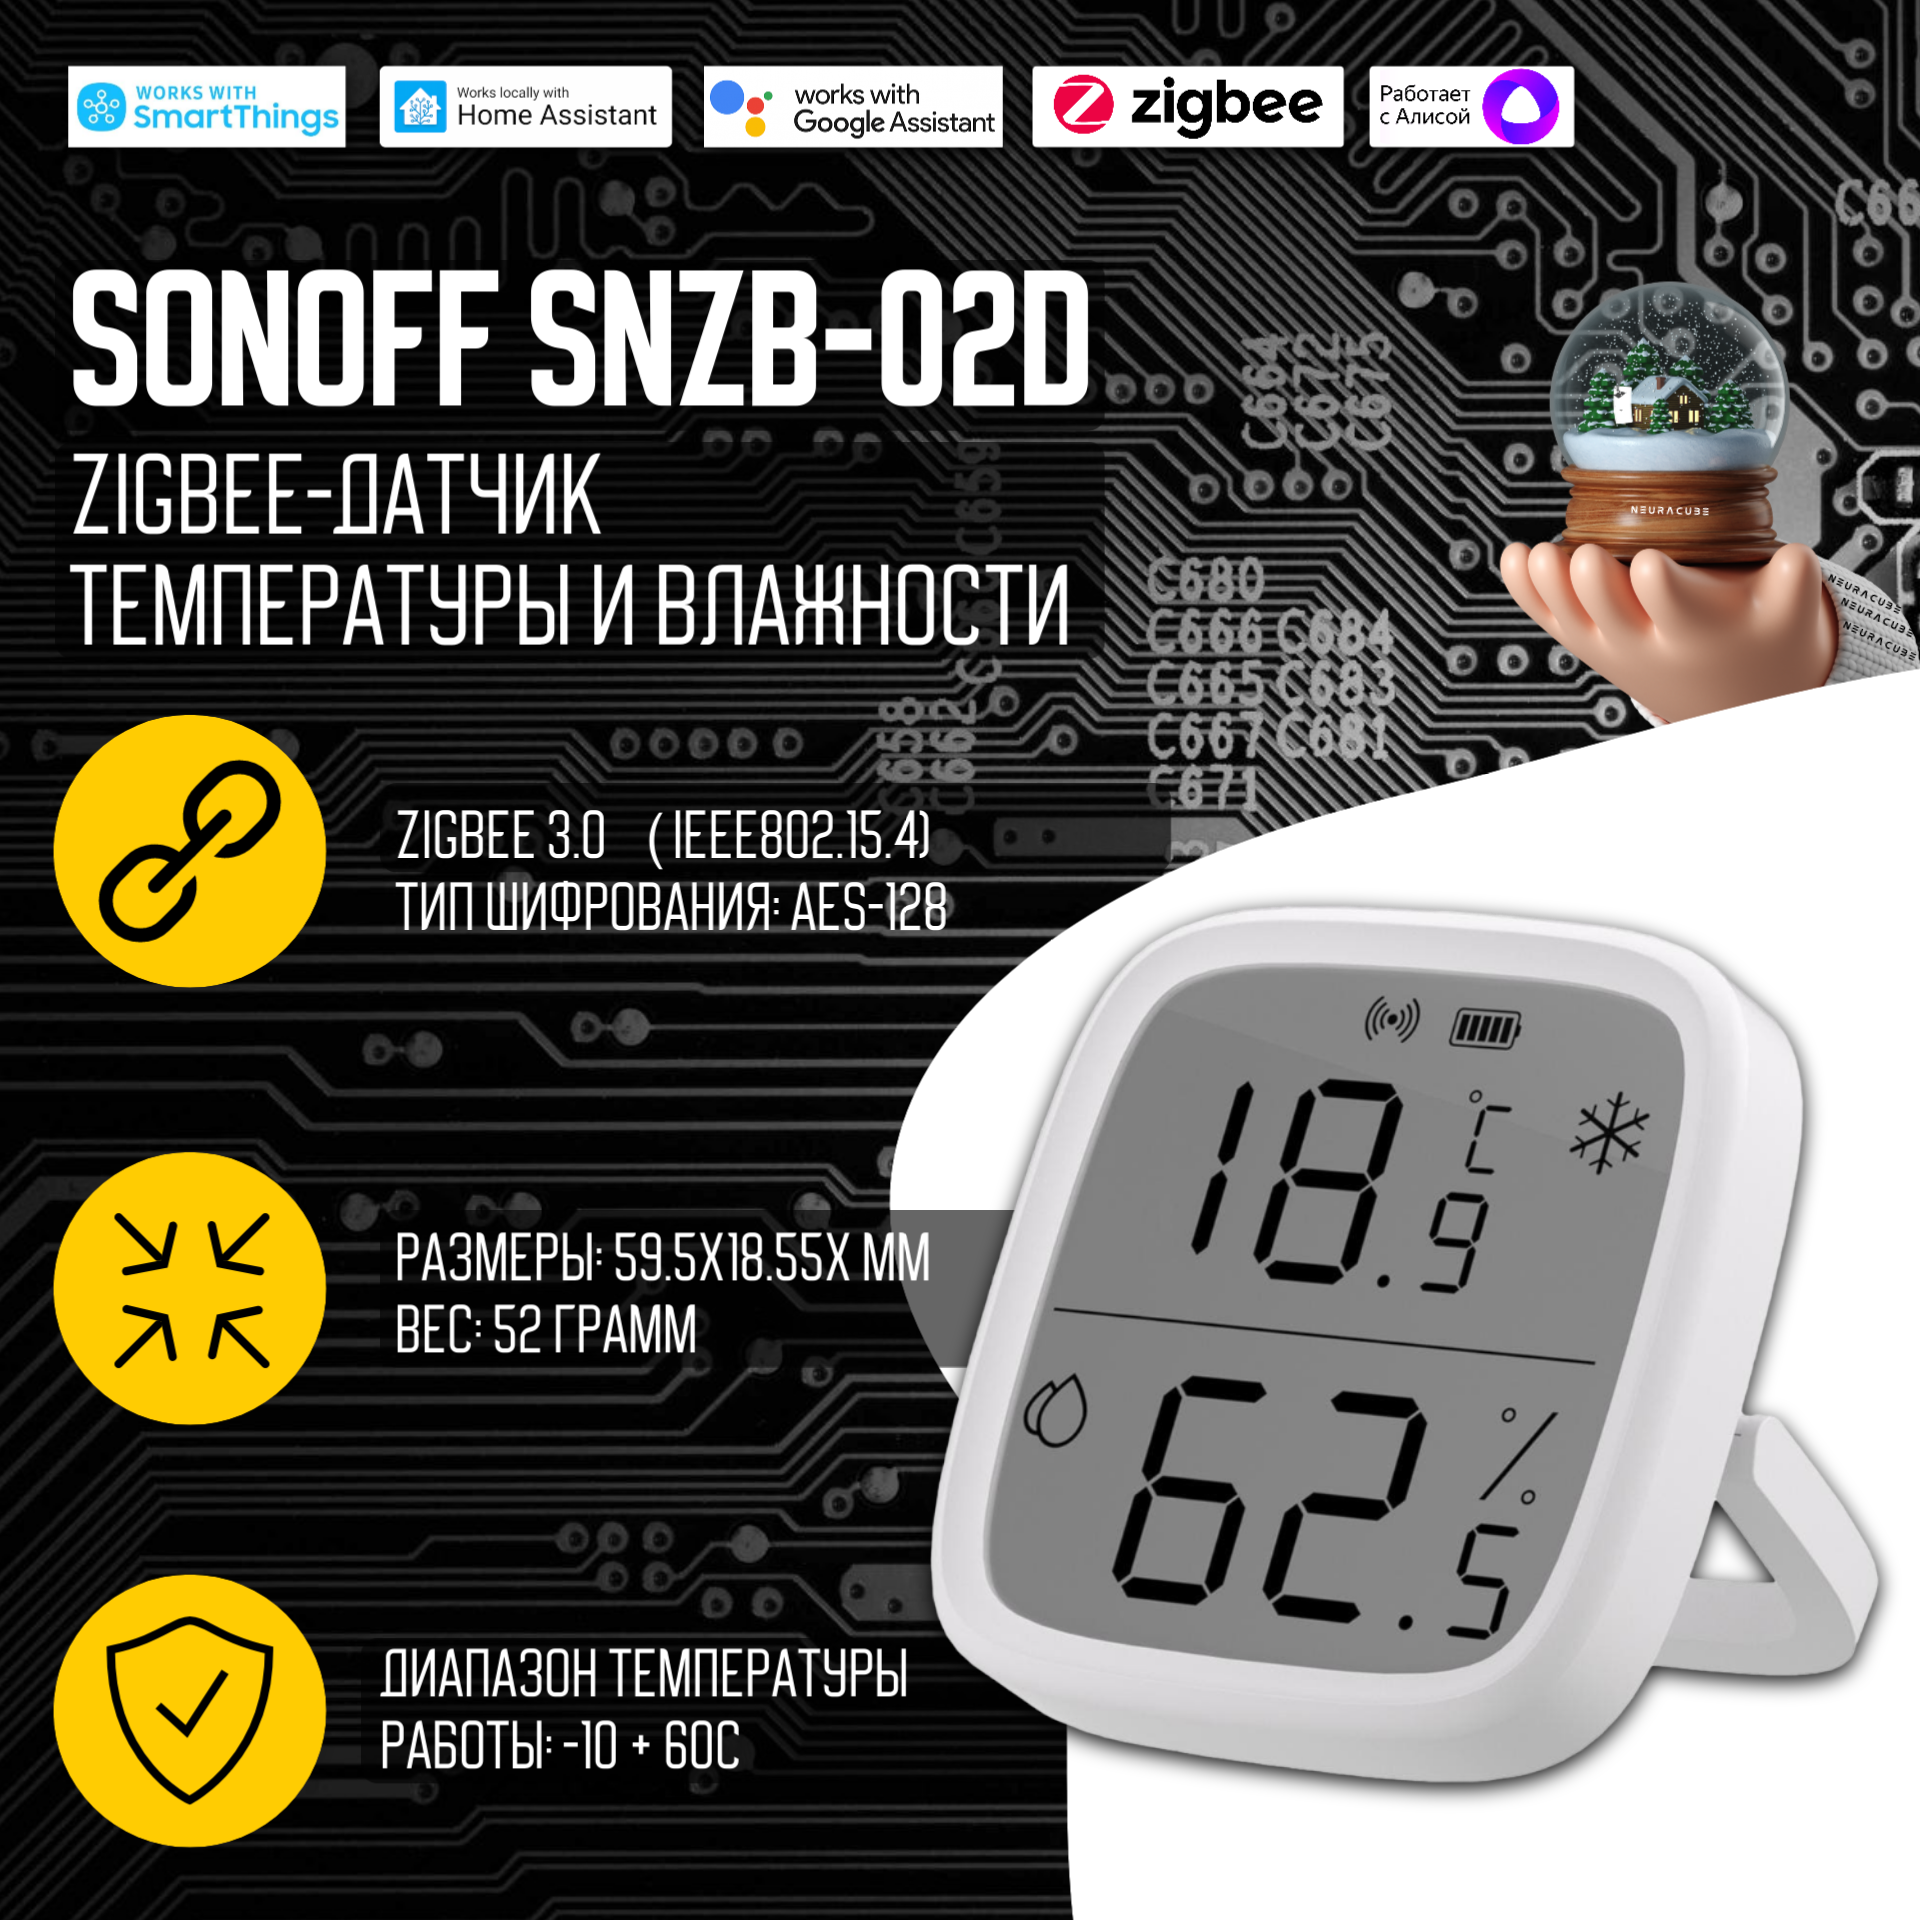 ZigBee Датчик температуры и влажности с дисплеем SONOFF SNZB-02D